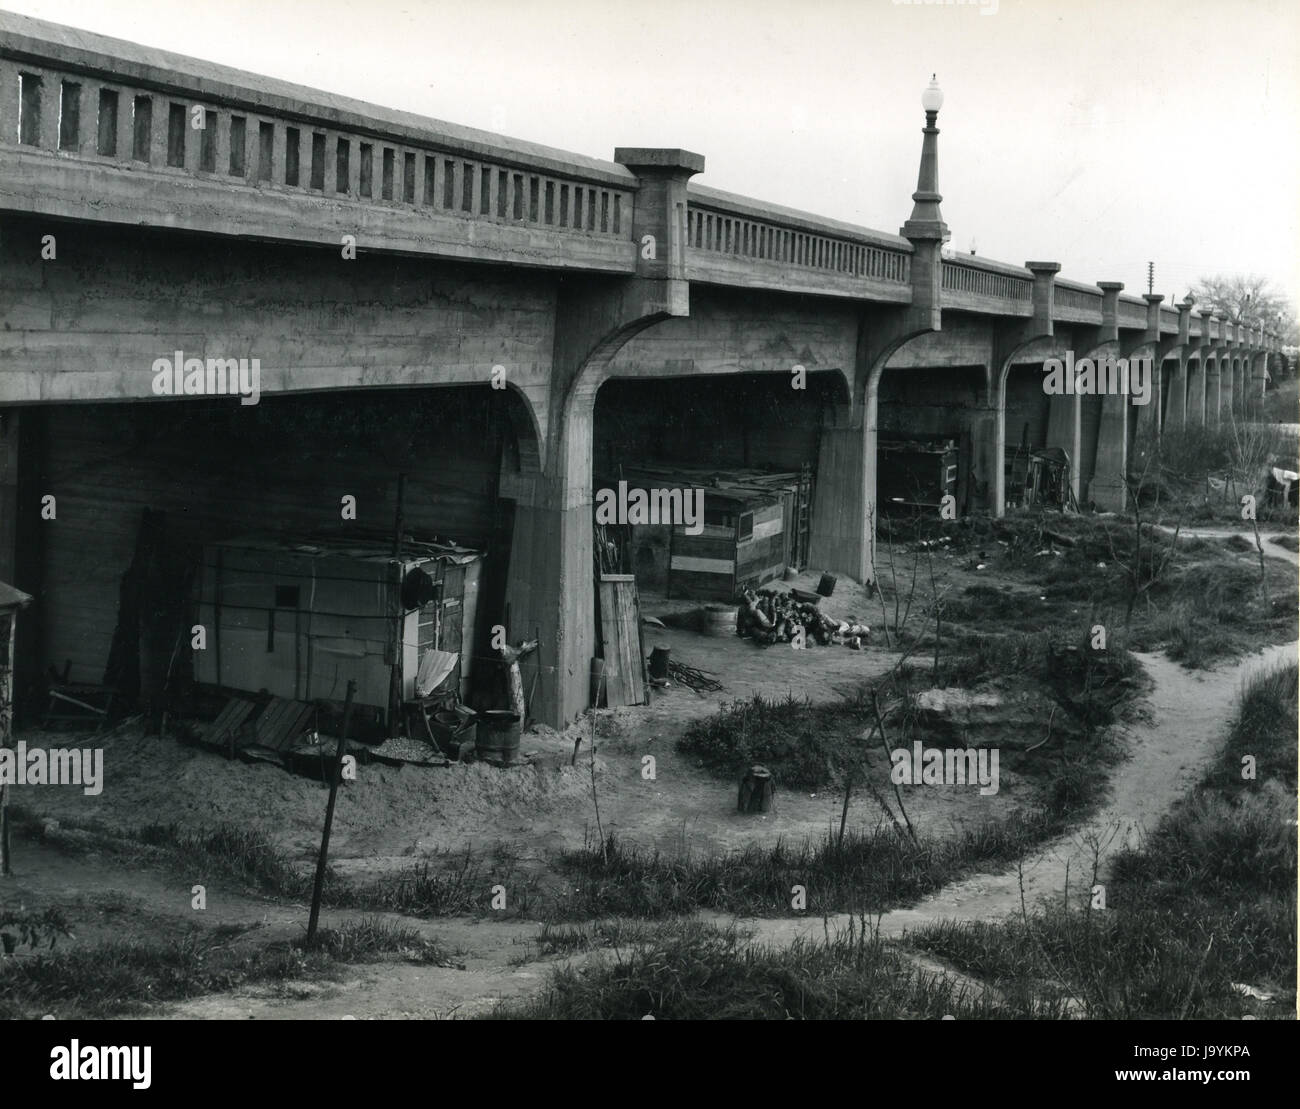 Marysville, California, 20 Febbraio 1940 - baracche di Squatter sotto la D Street Bridge durante la Grande Depressione. Foto di Dorothea Lange Foto Stock